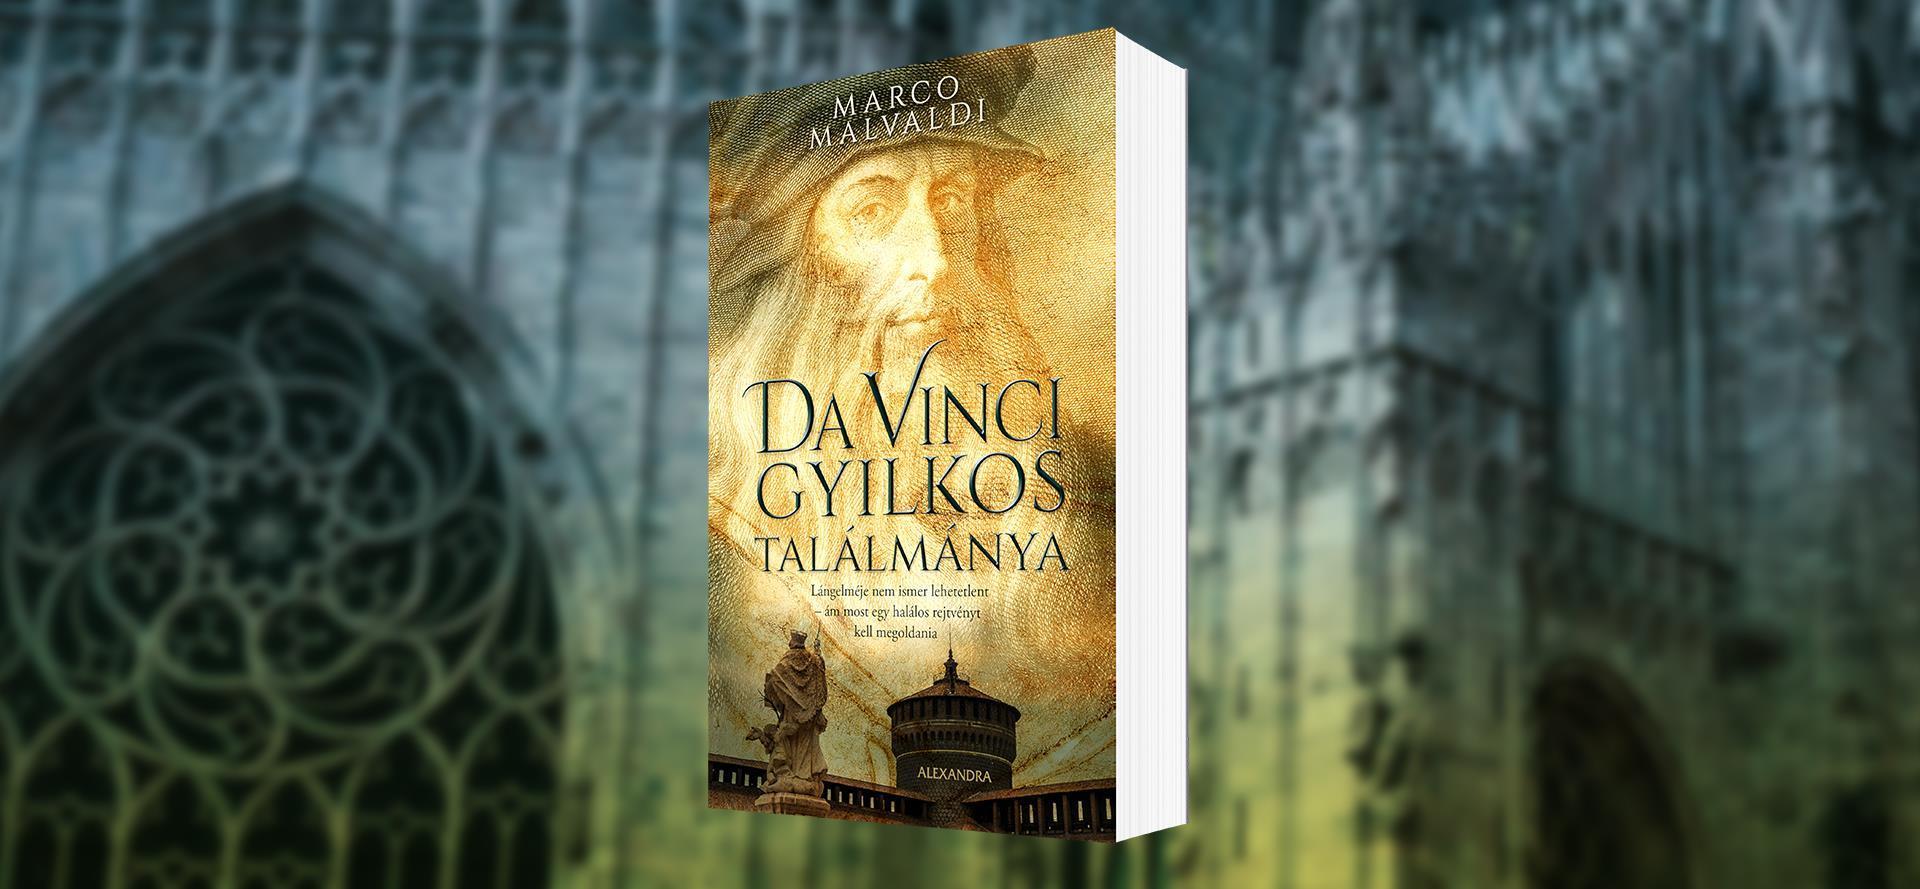 Kísérd el a reneszánsz kor legismertebb alakját egy szörnyű bűntény megoldásának történetén!